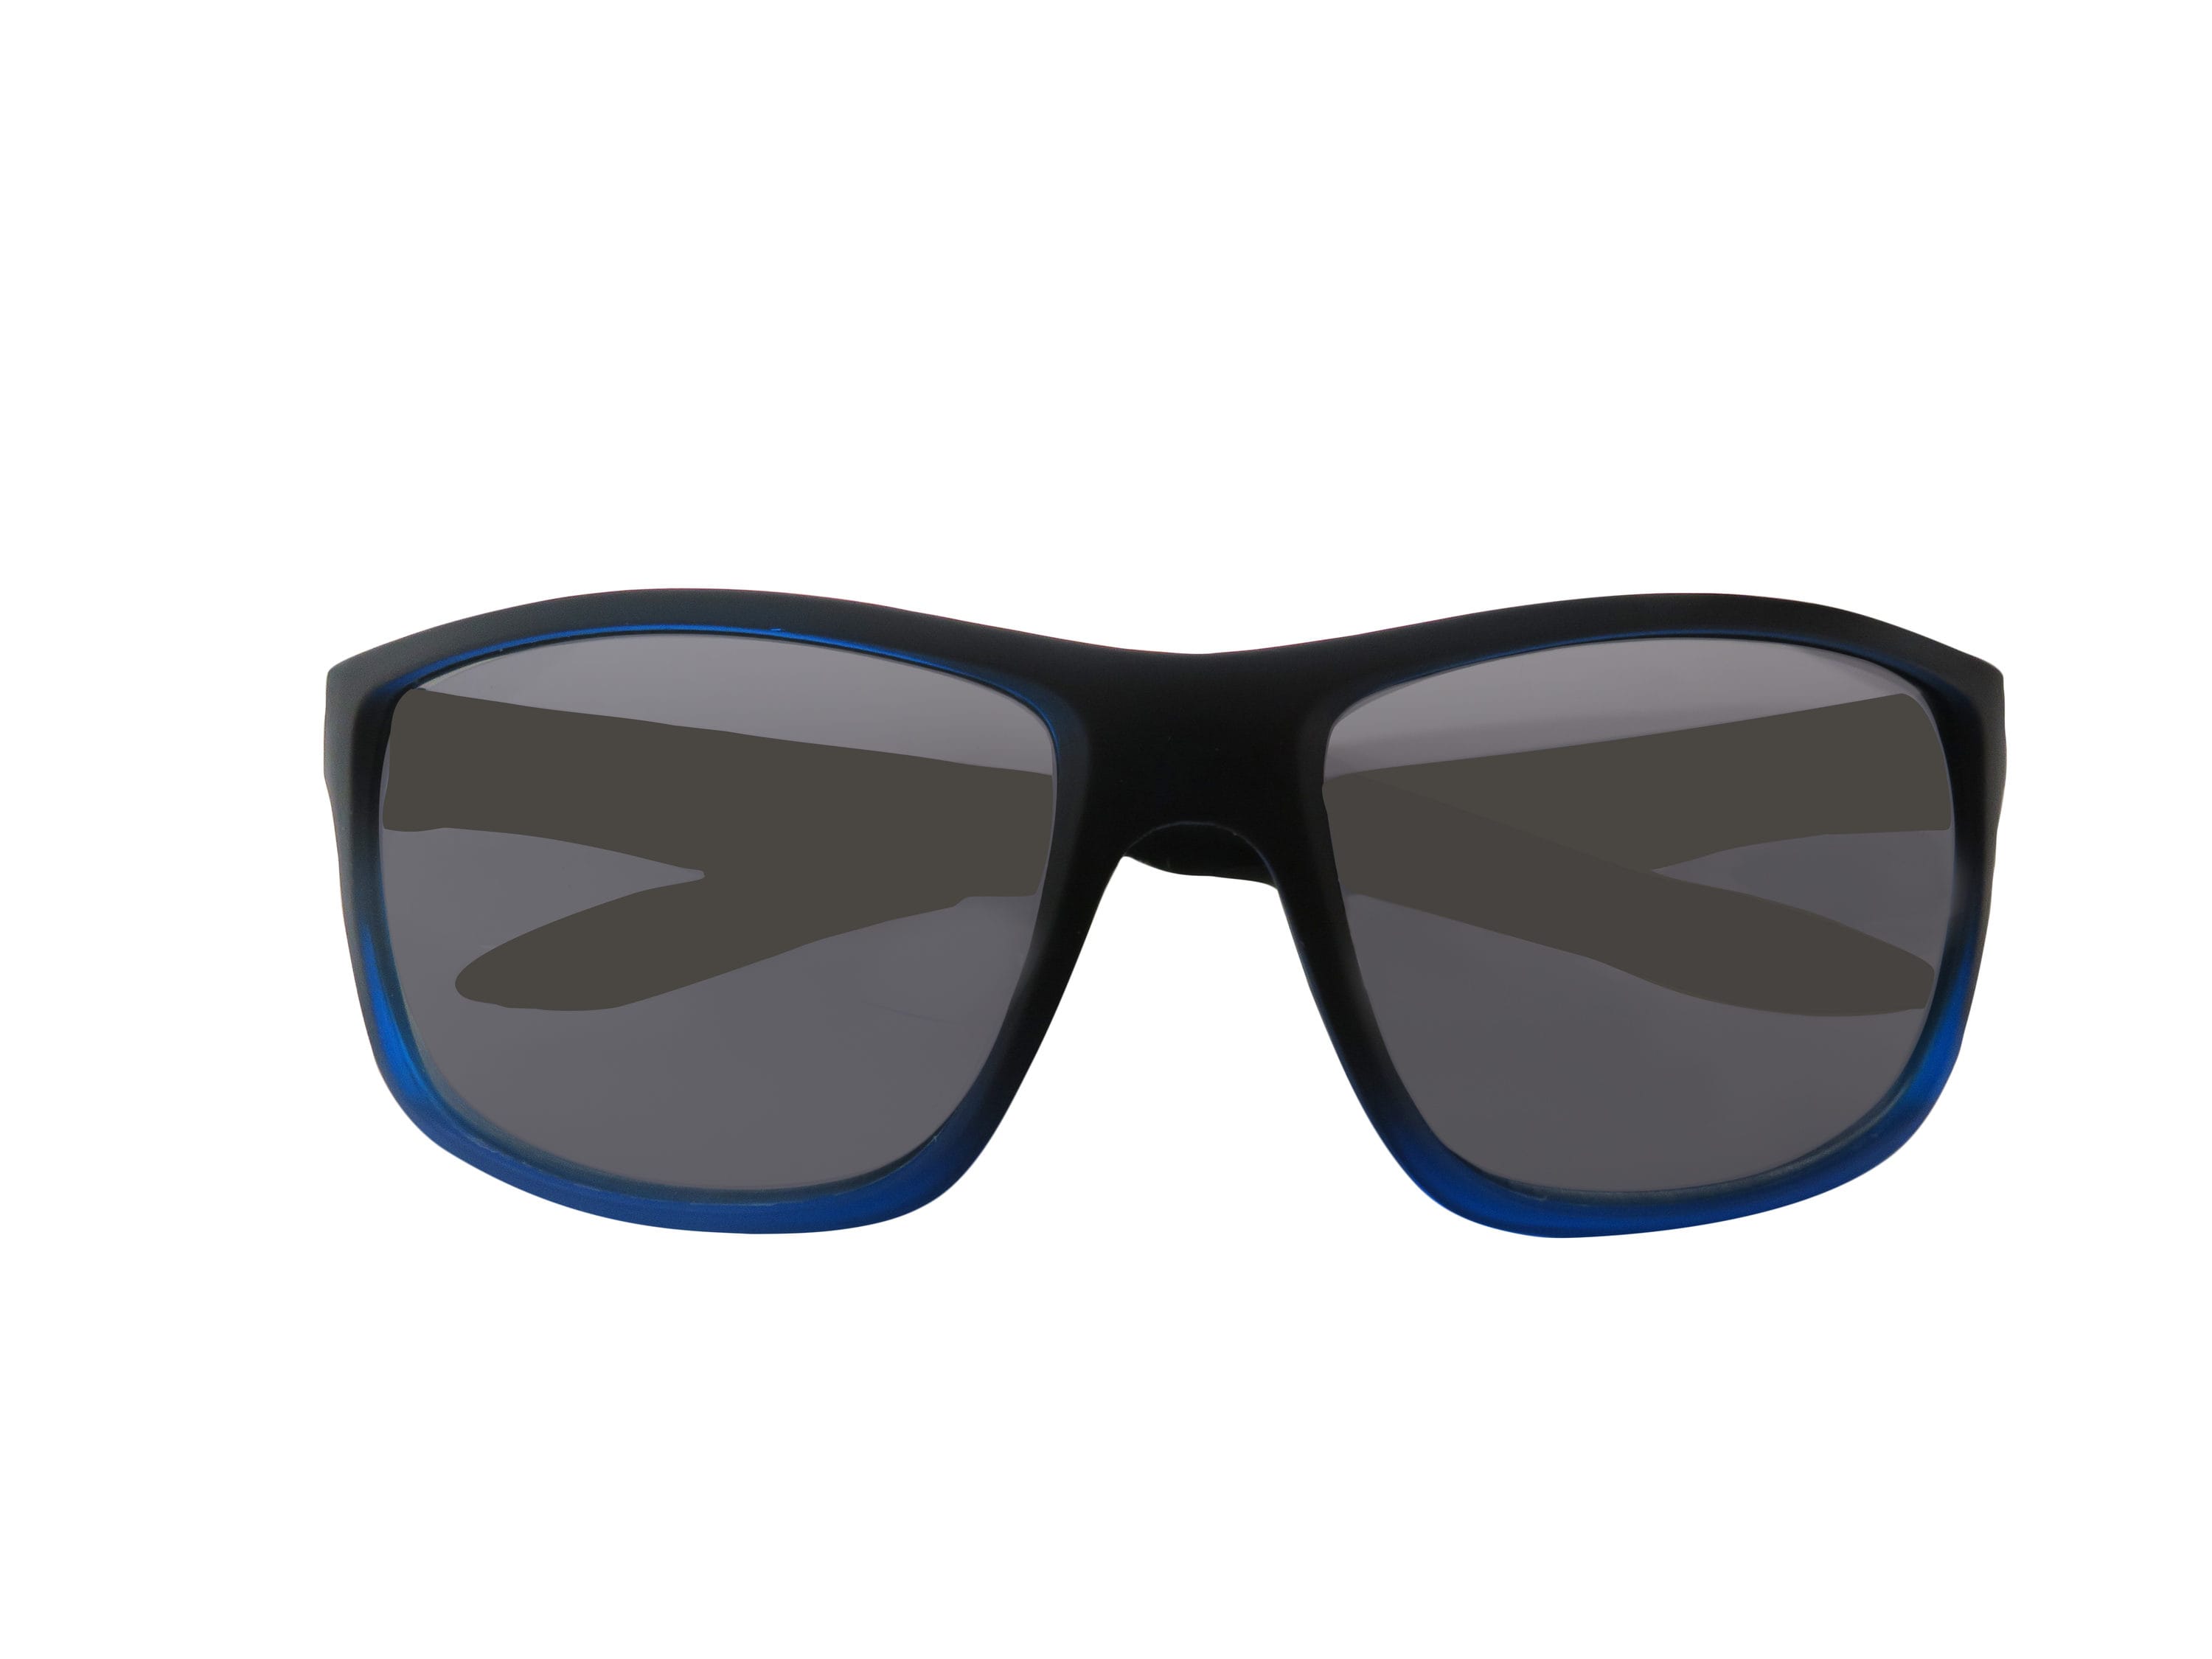 Hillman Men's Polarized Black and Blue Plastic Sunglasses in the